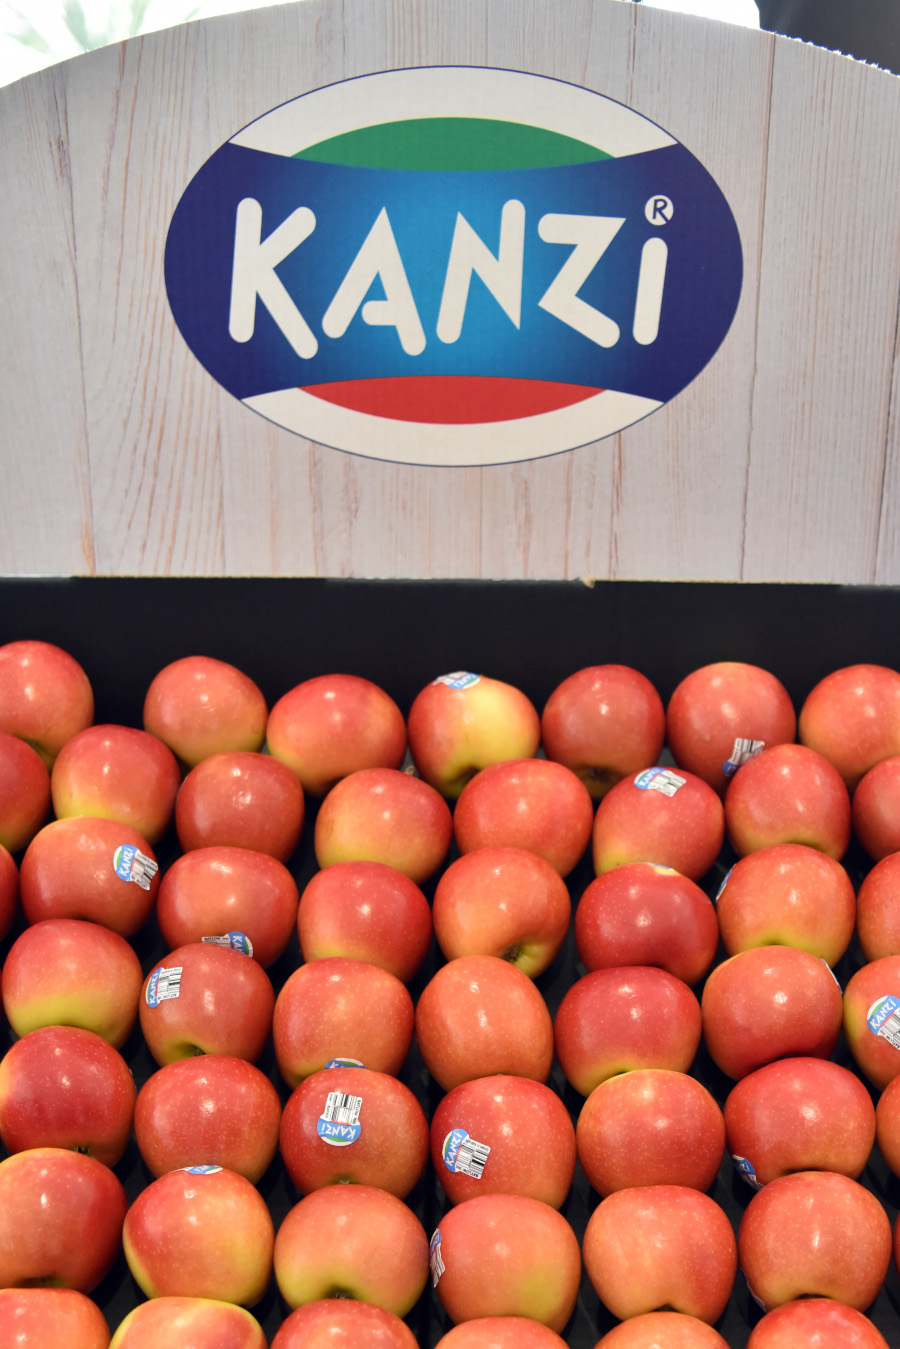 Jabłka Kanzi na wystawie